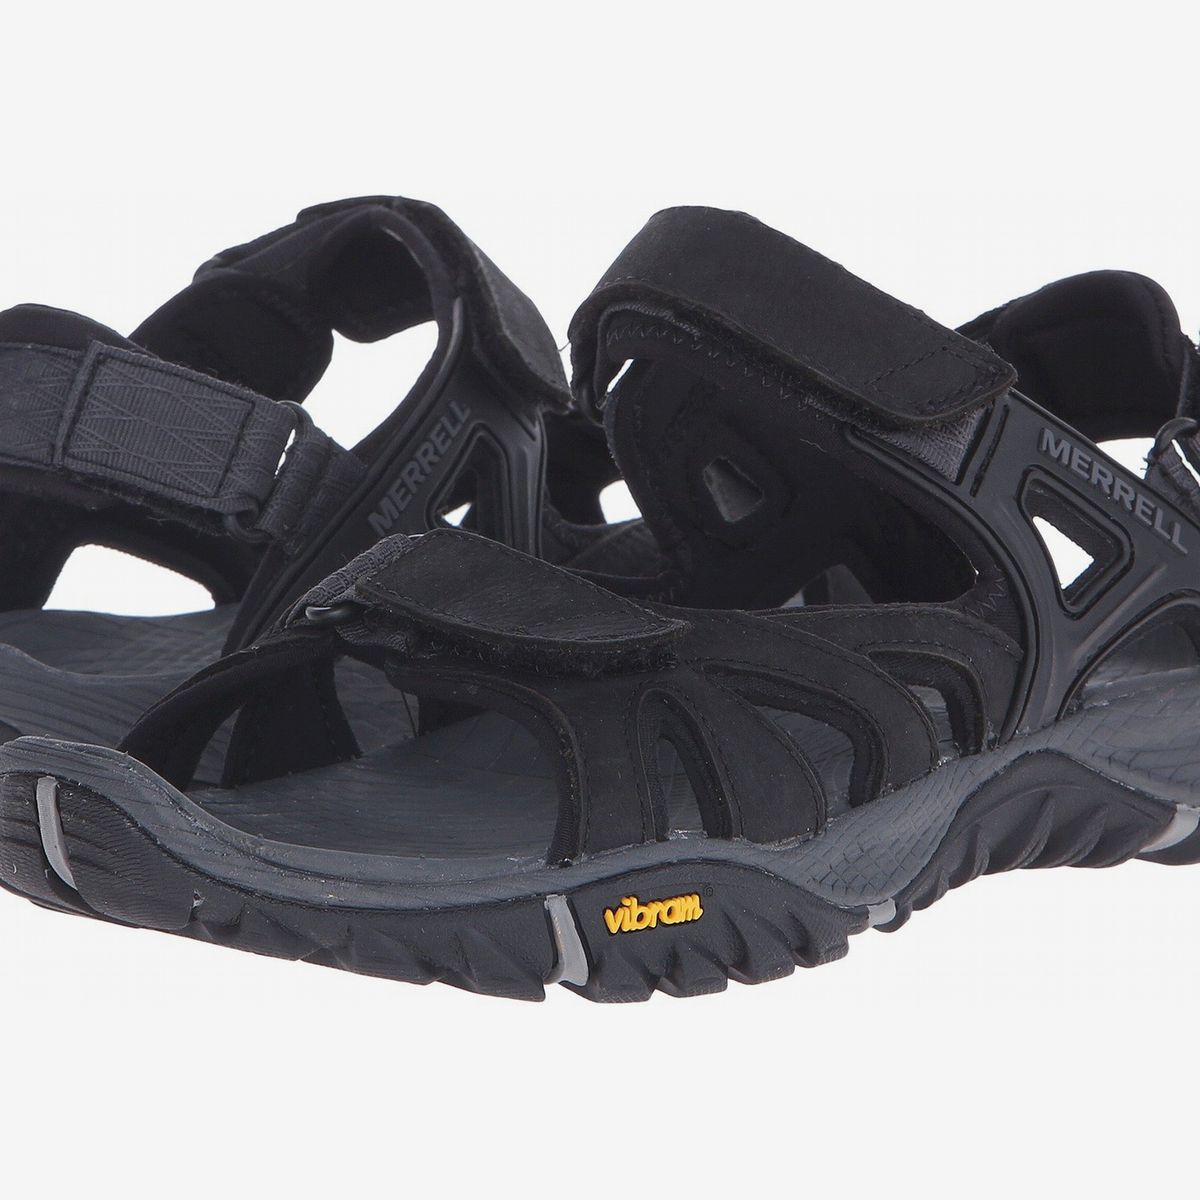 womens waterproof hiking sandals